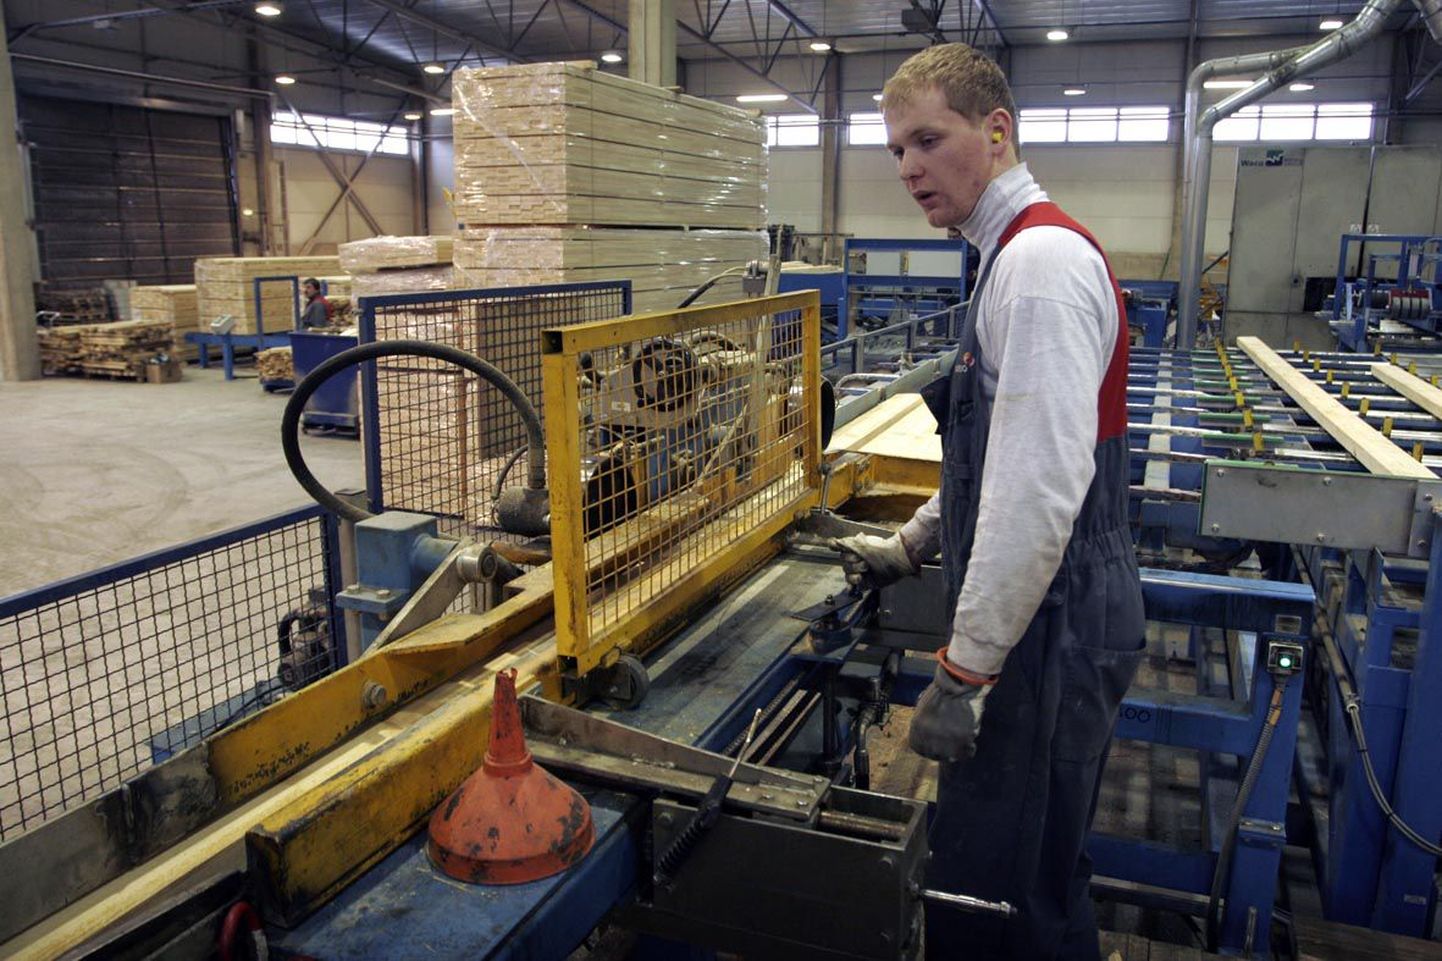 Aasta lõpus Viljandist Imavere saeveskisse üle kolitud liimpuitkomponentide tootmisliinil töötab 23 inimest. Tööprotsessil hoiab silma peal liinioperaator Egert Okas.